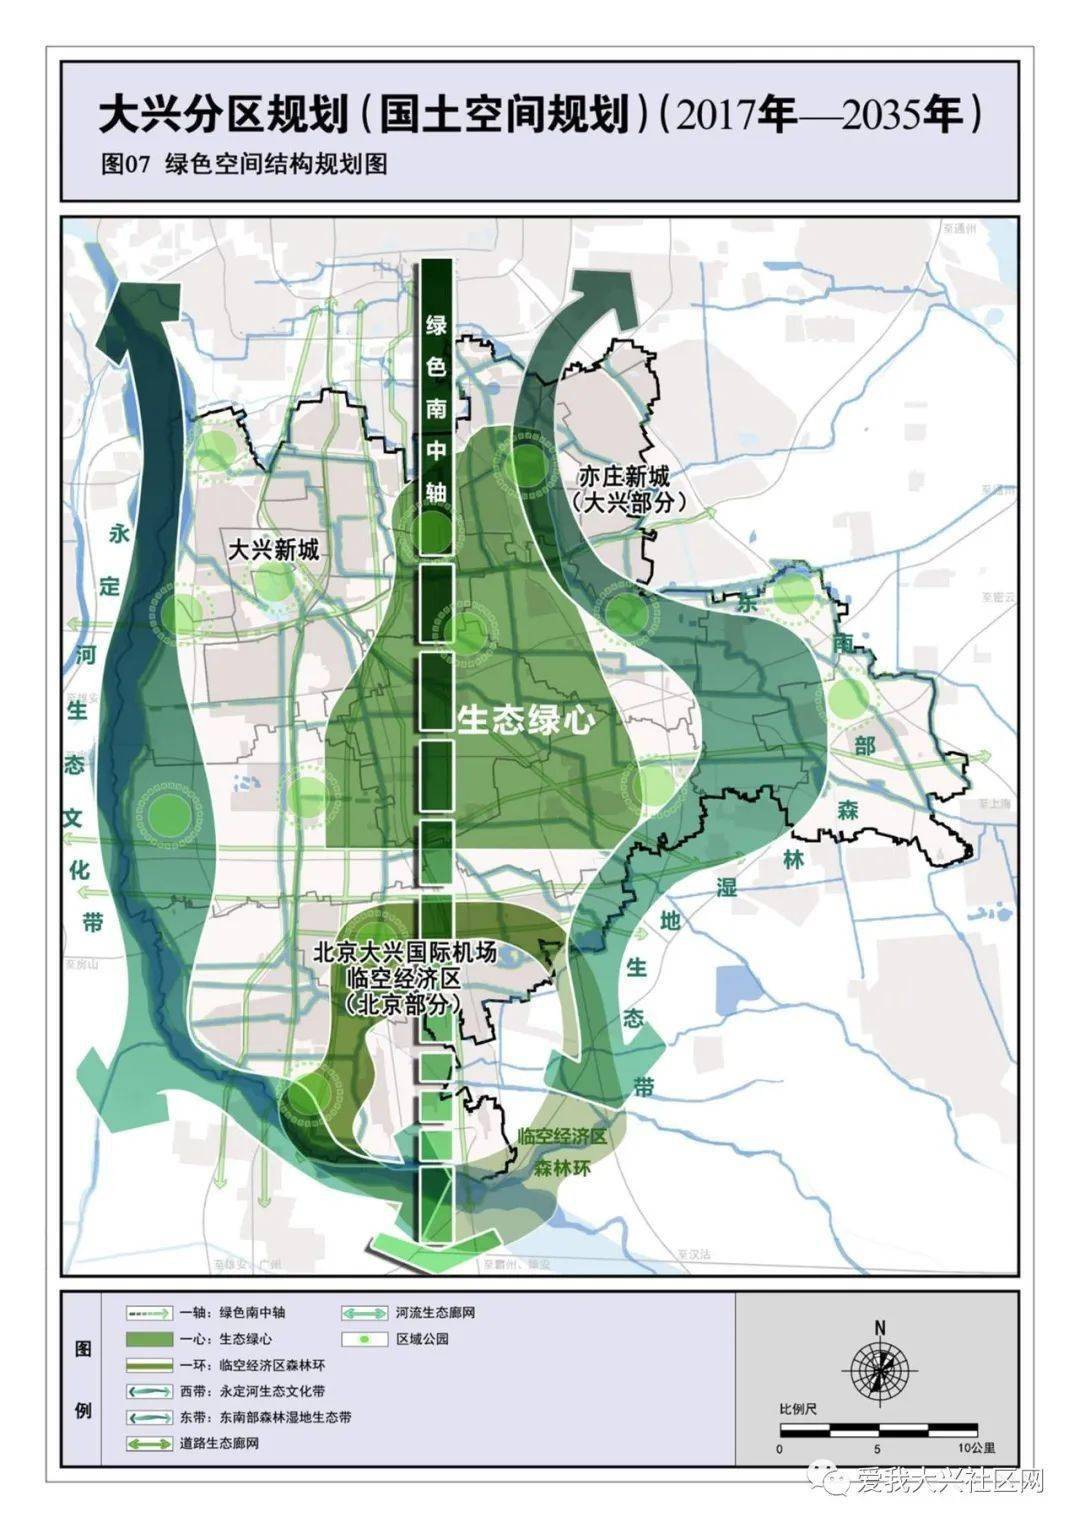 在最新的《大兴分区规划(2020-2035)》中也多次提及了南中轴森林公园